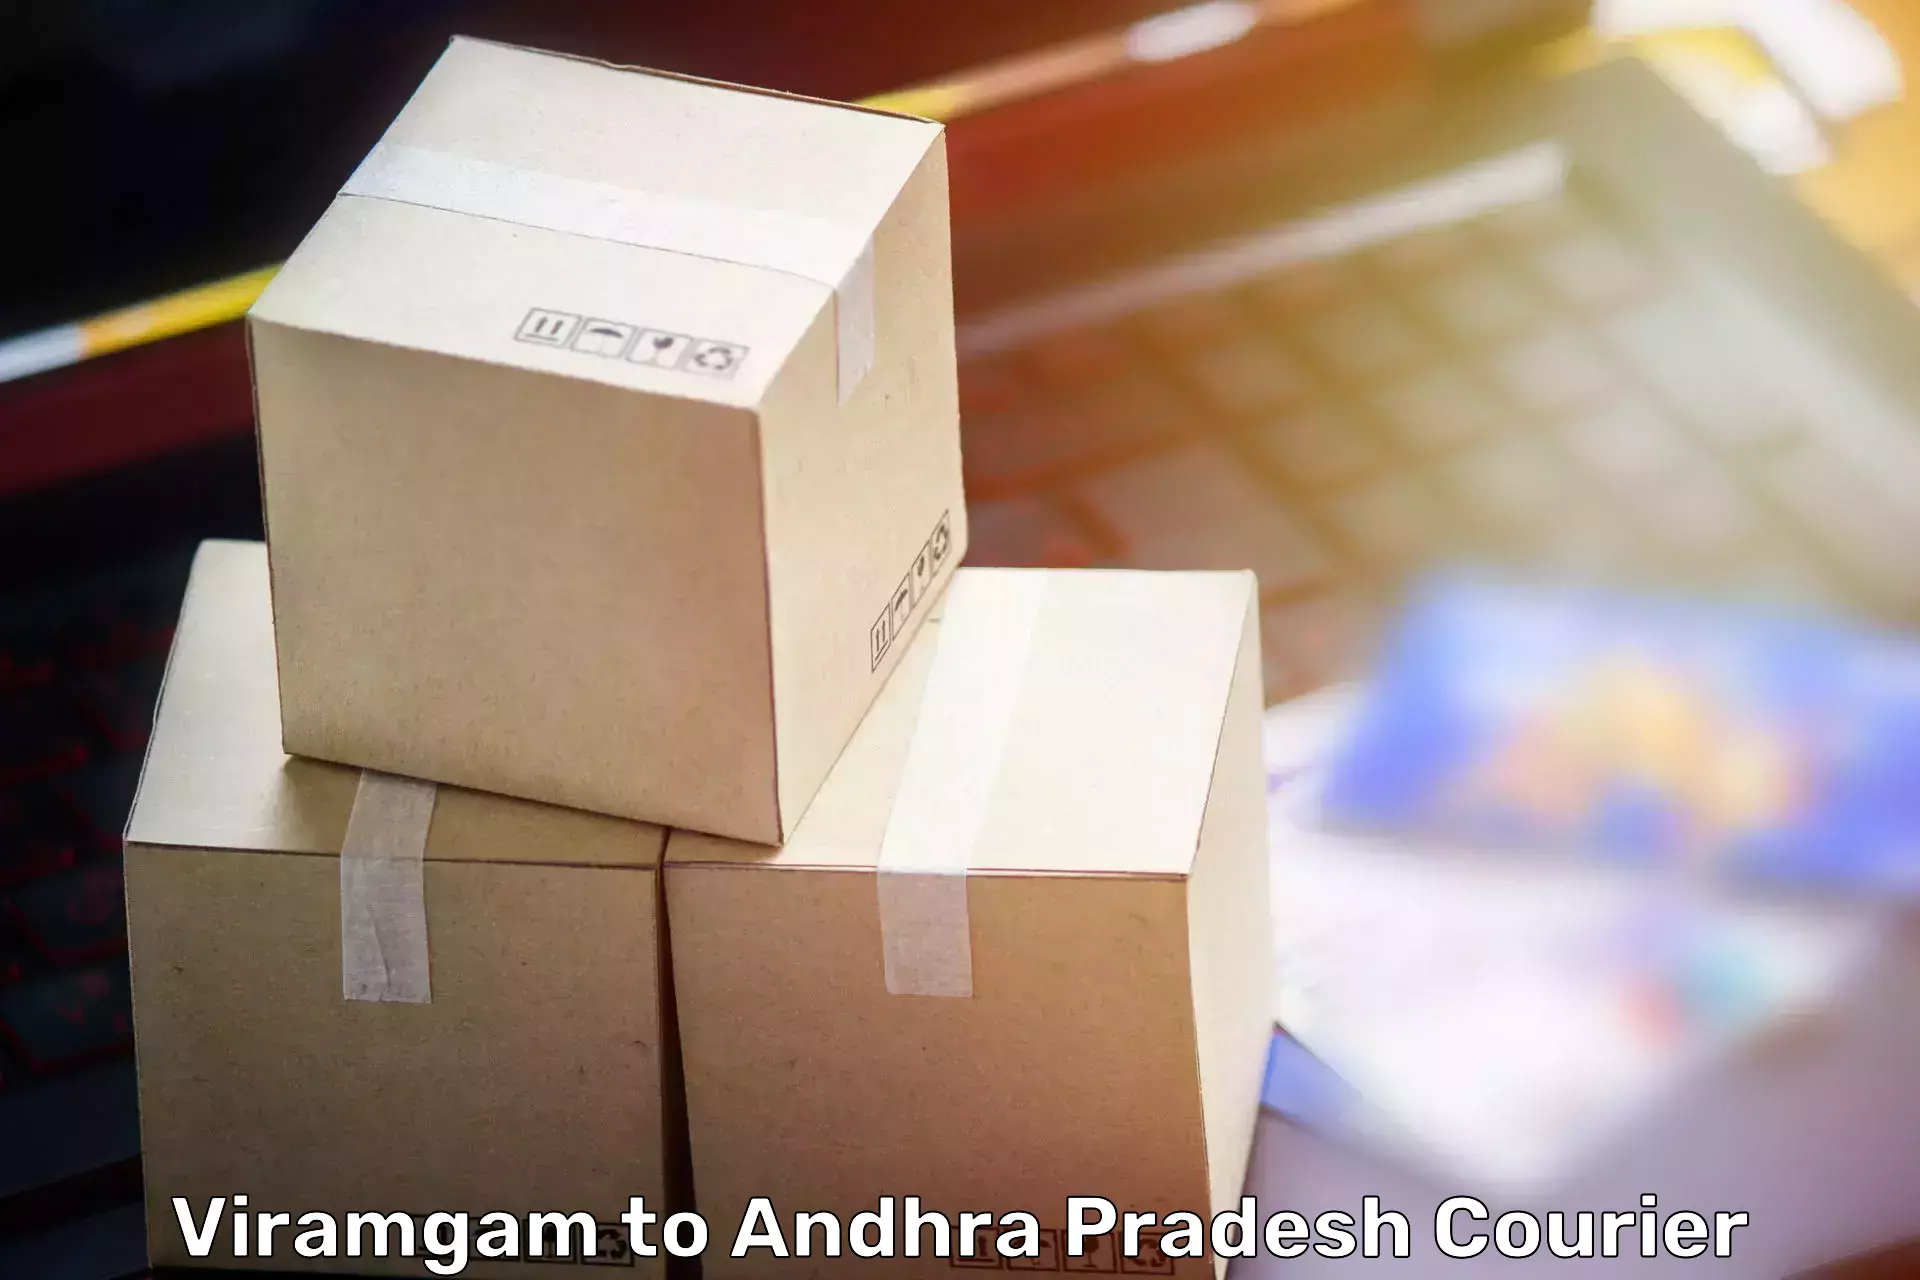 Furniture movers and packers Viramgam to Ganapavaram